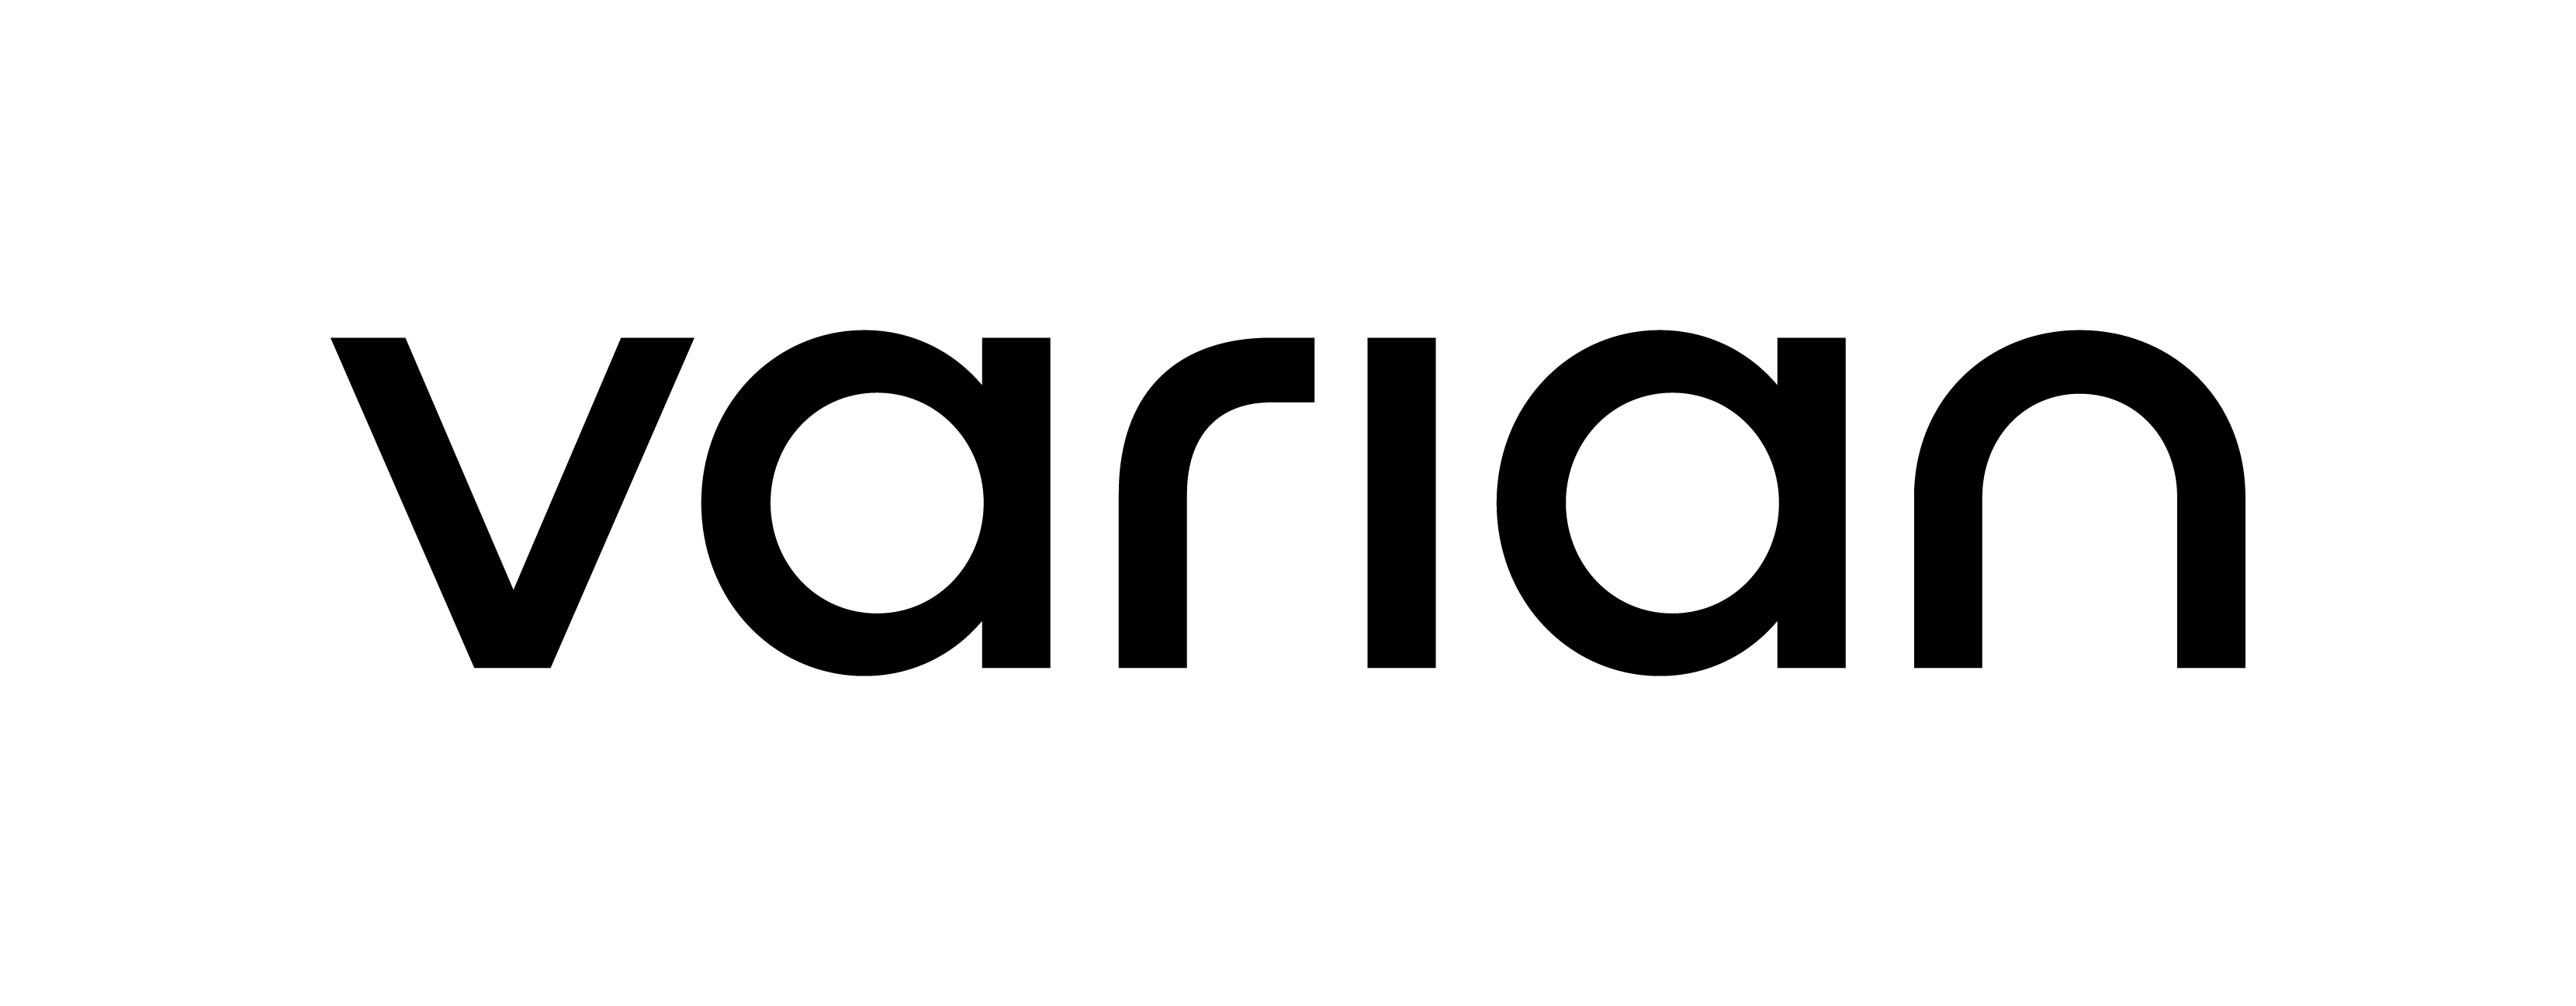 Varian Logo - Varian company logo 2017.png